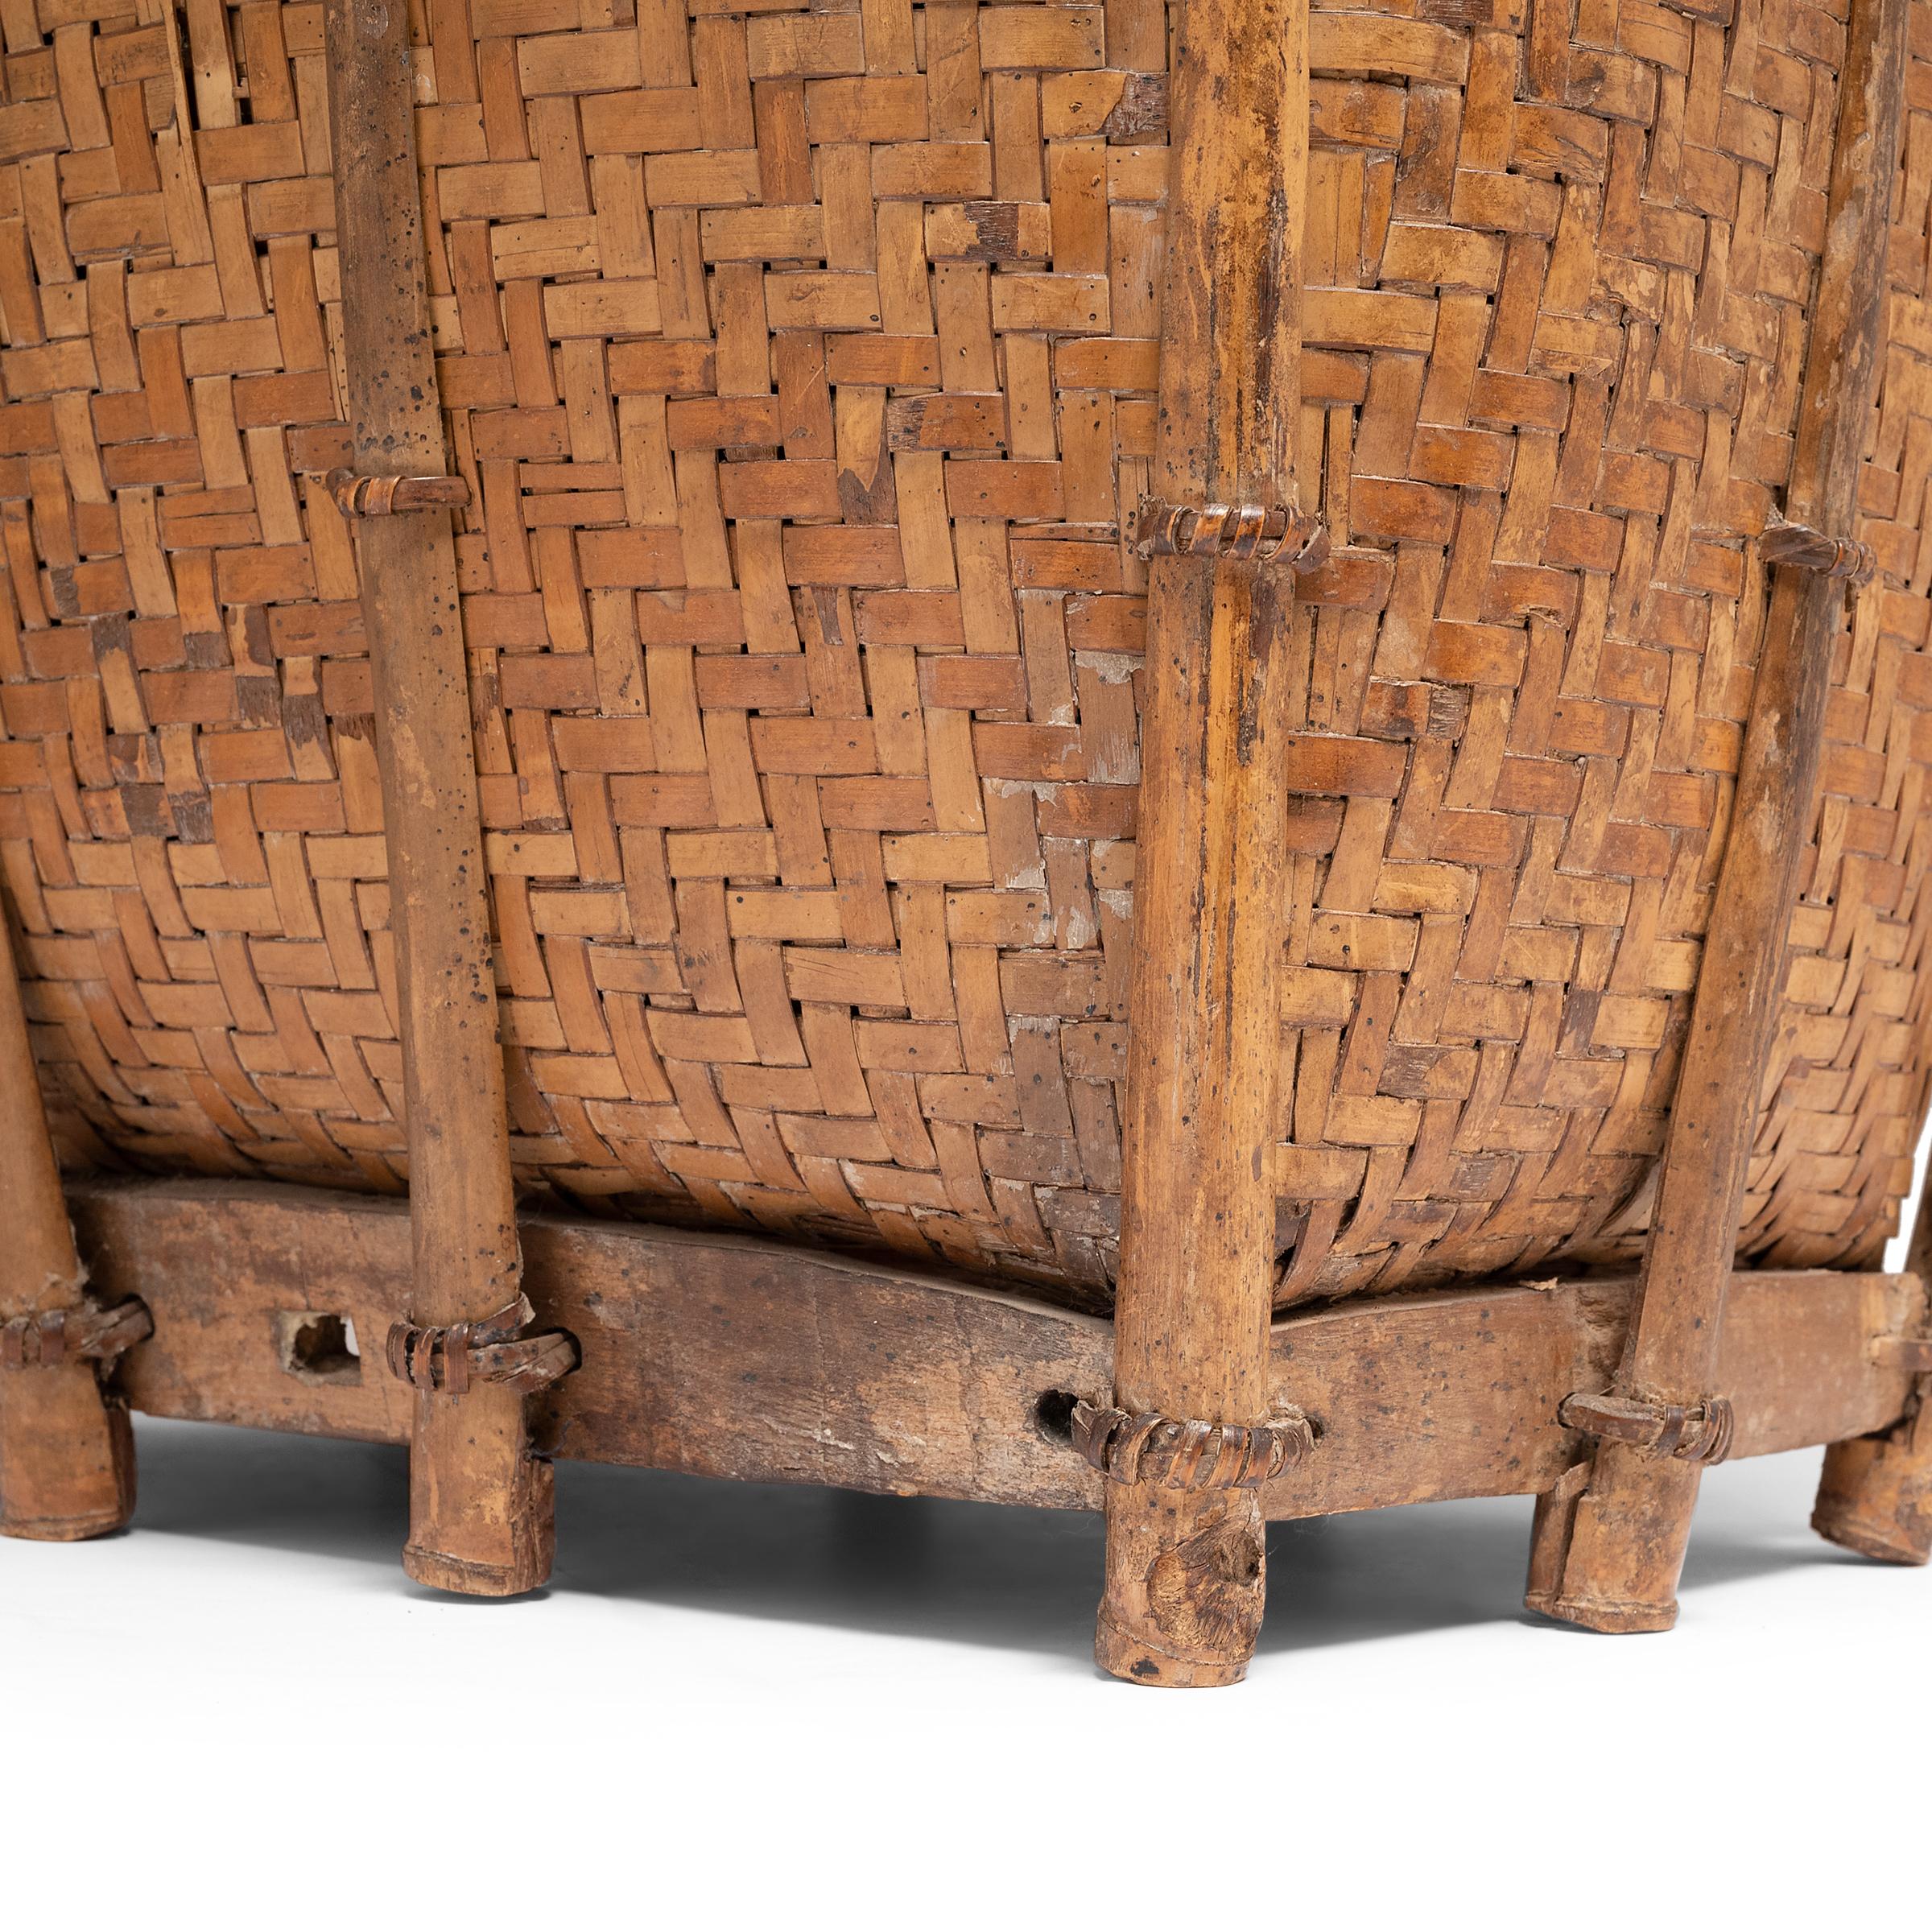 Philippine Filipino Woven Bamboo Pack Basket